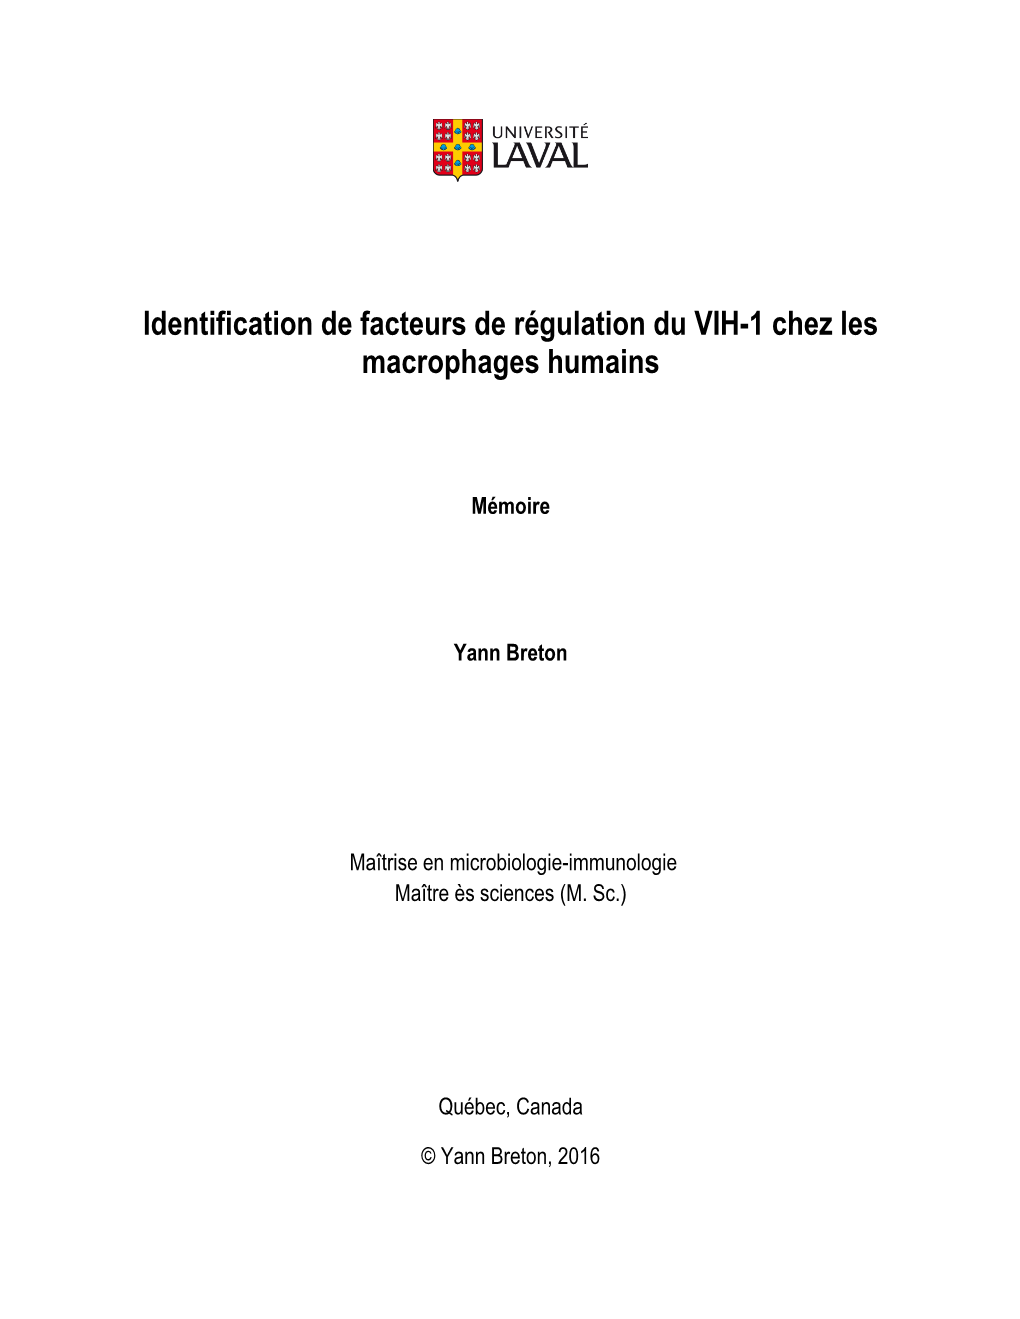 Identification De Facteurs De Régulation Du VIH-1 Chez Les Macrophages Humains